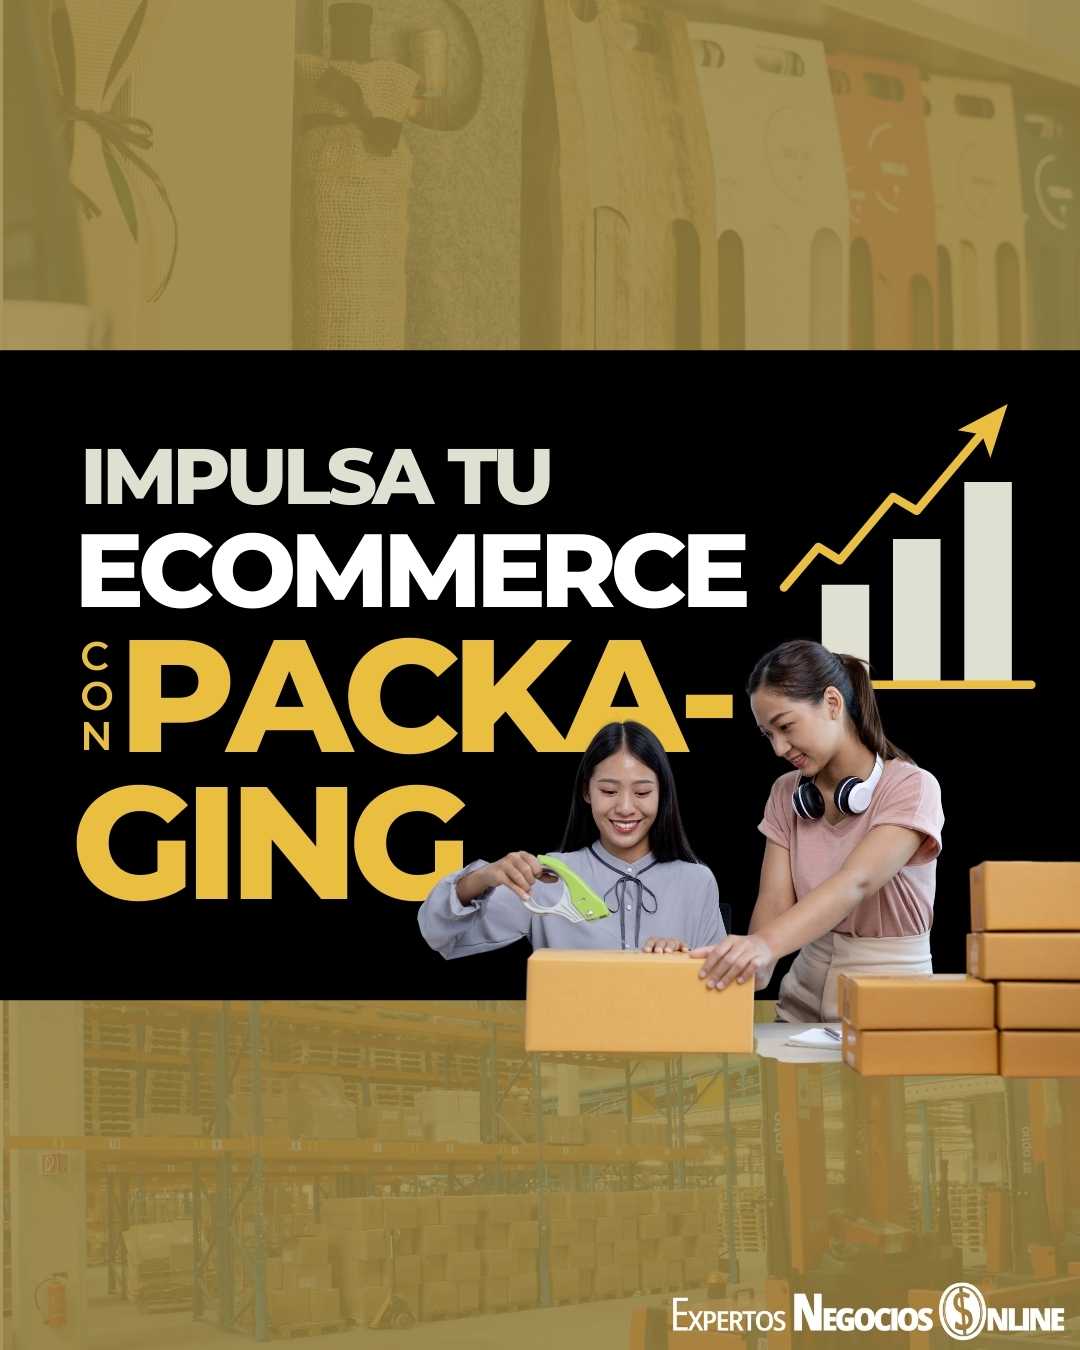 Packaging en eCommerce para impulsar tu negocio